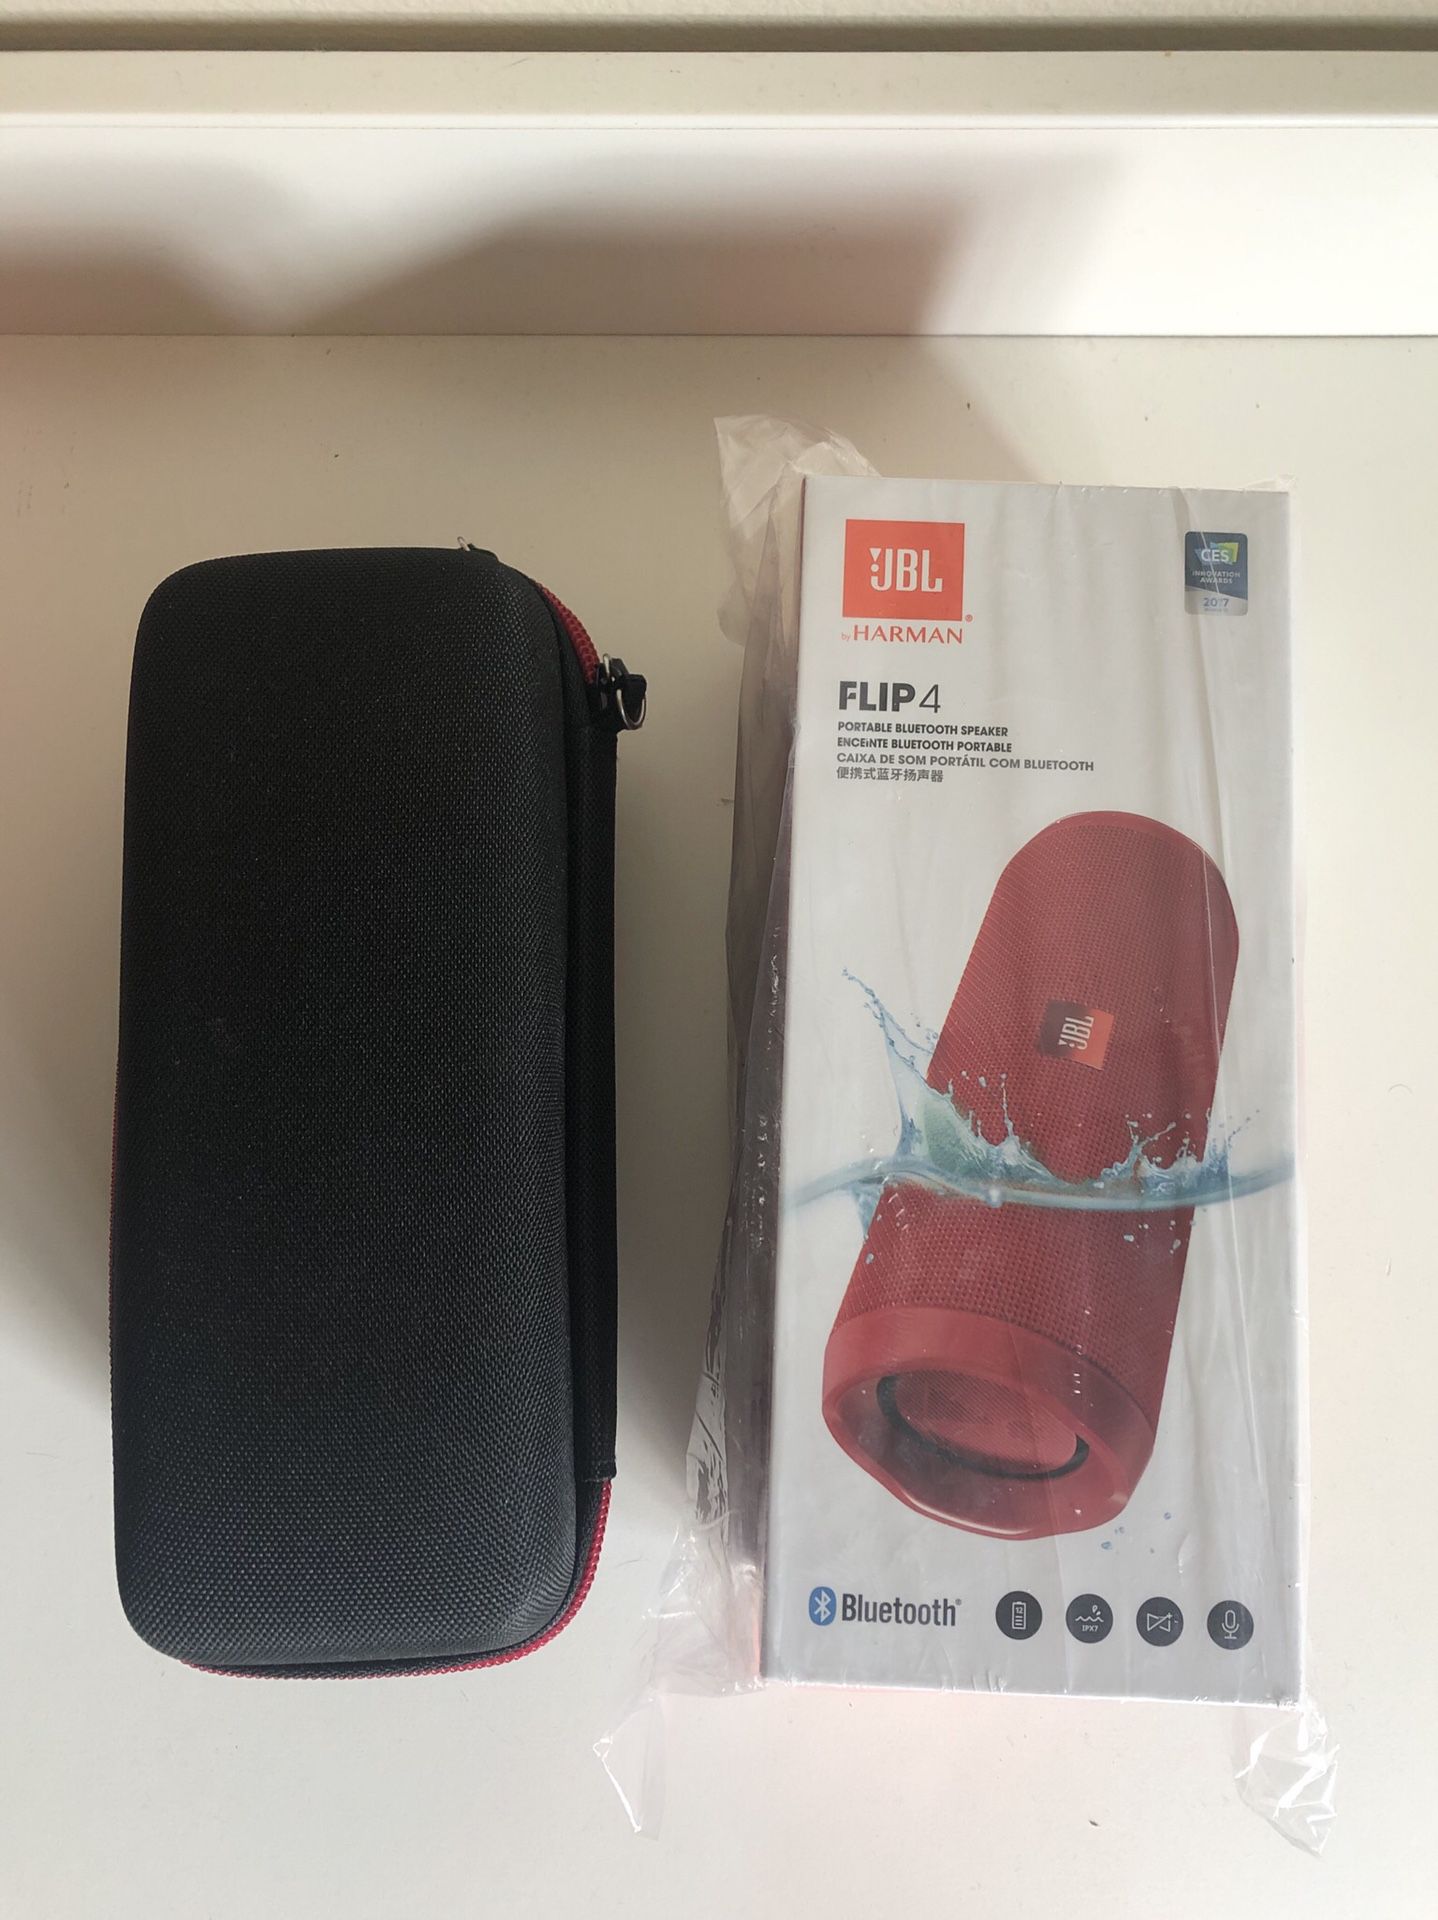 *PENDING* JBL Flip 4 Waterproof Portable Bluetooth Speaker